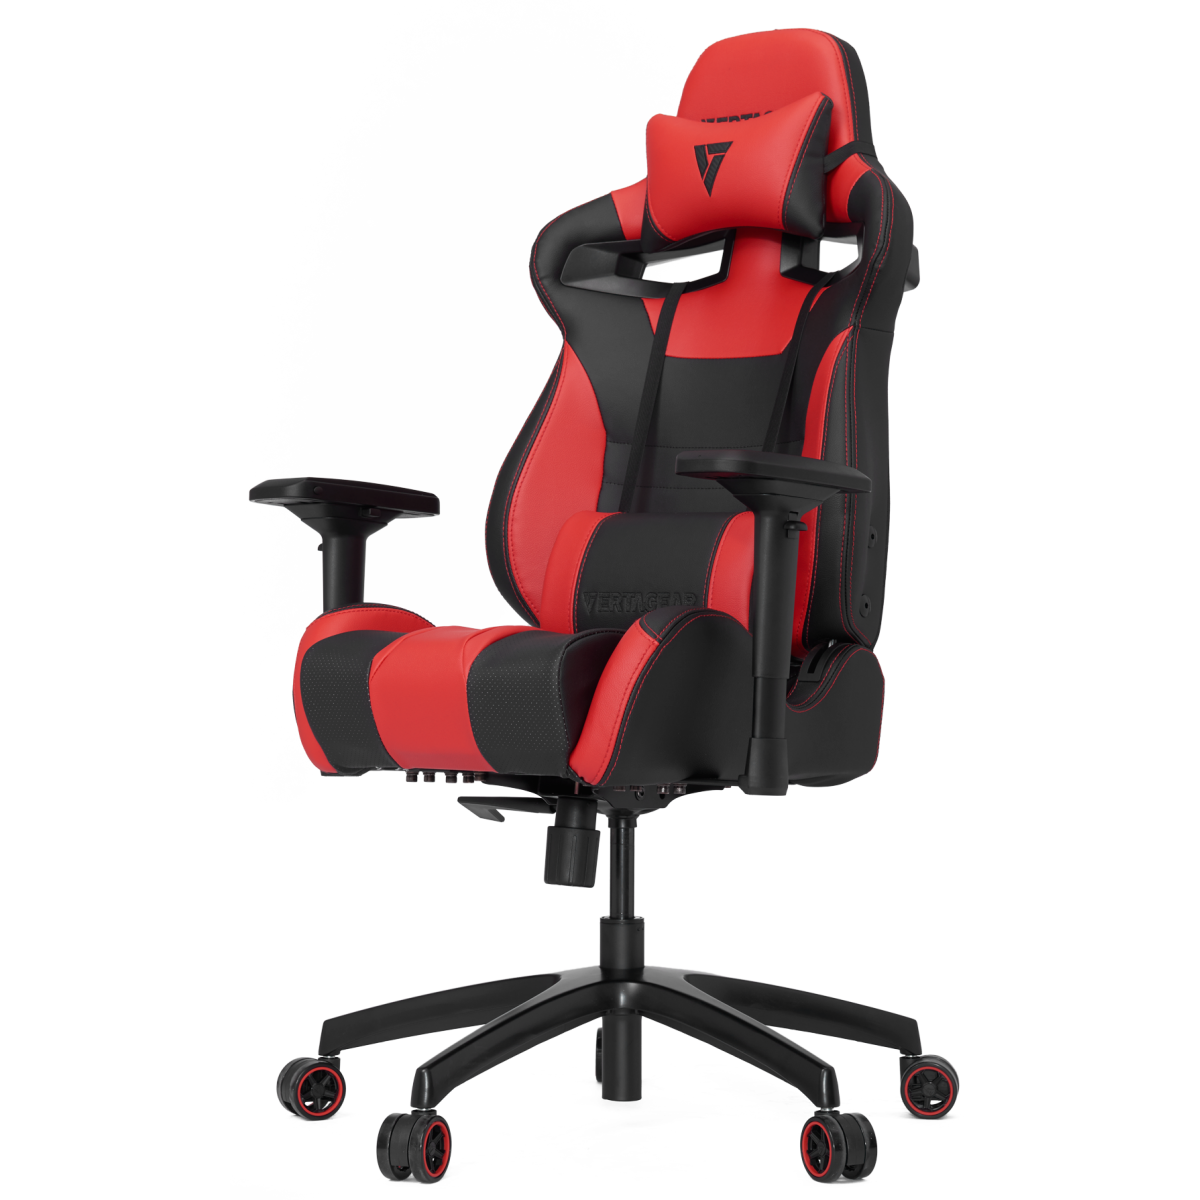 Cadeira Gamer Vertagear Racing SL4000, Black-Red, VG-SL4000_RD